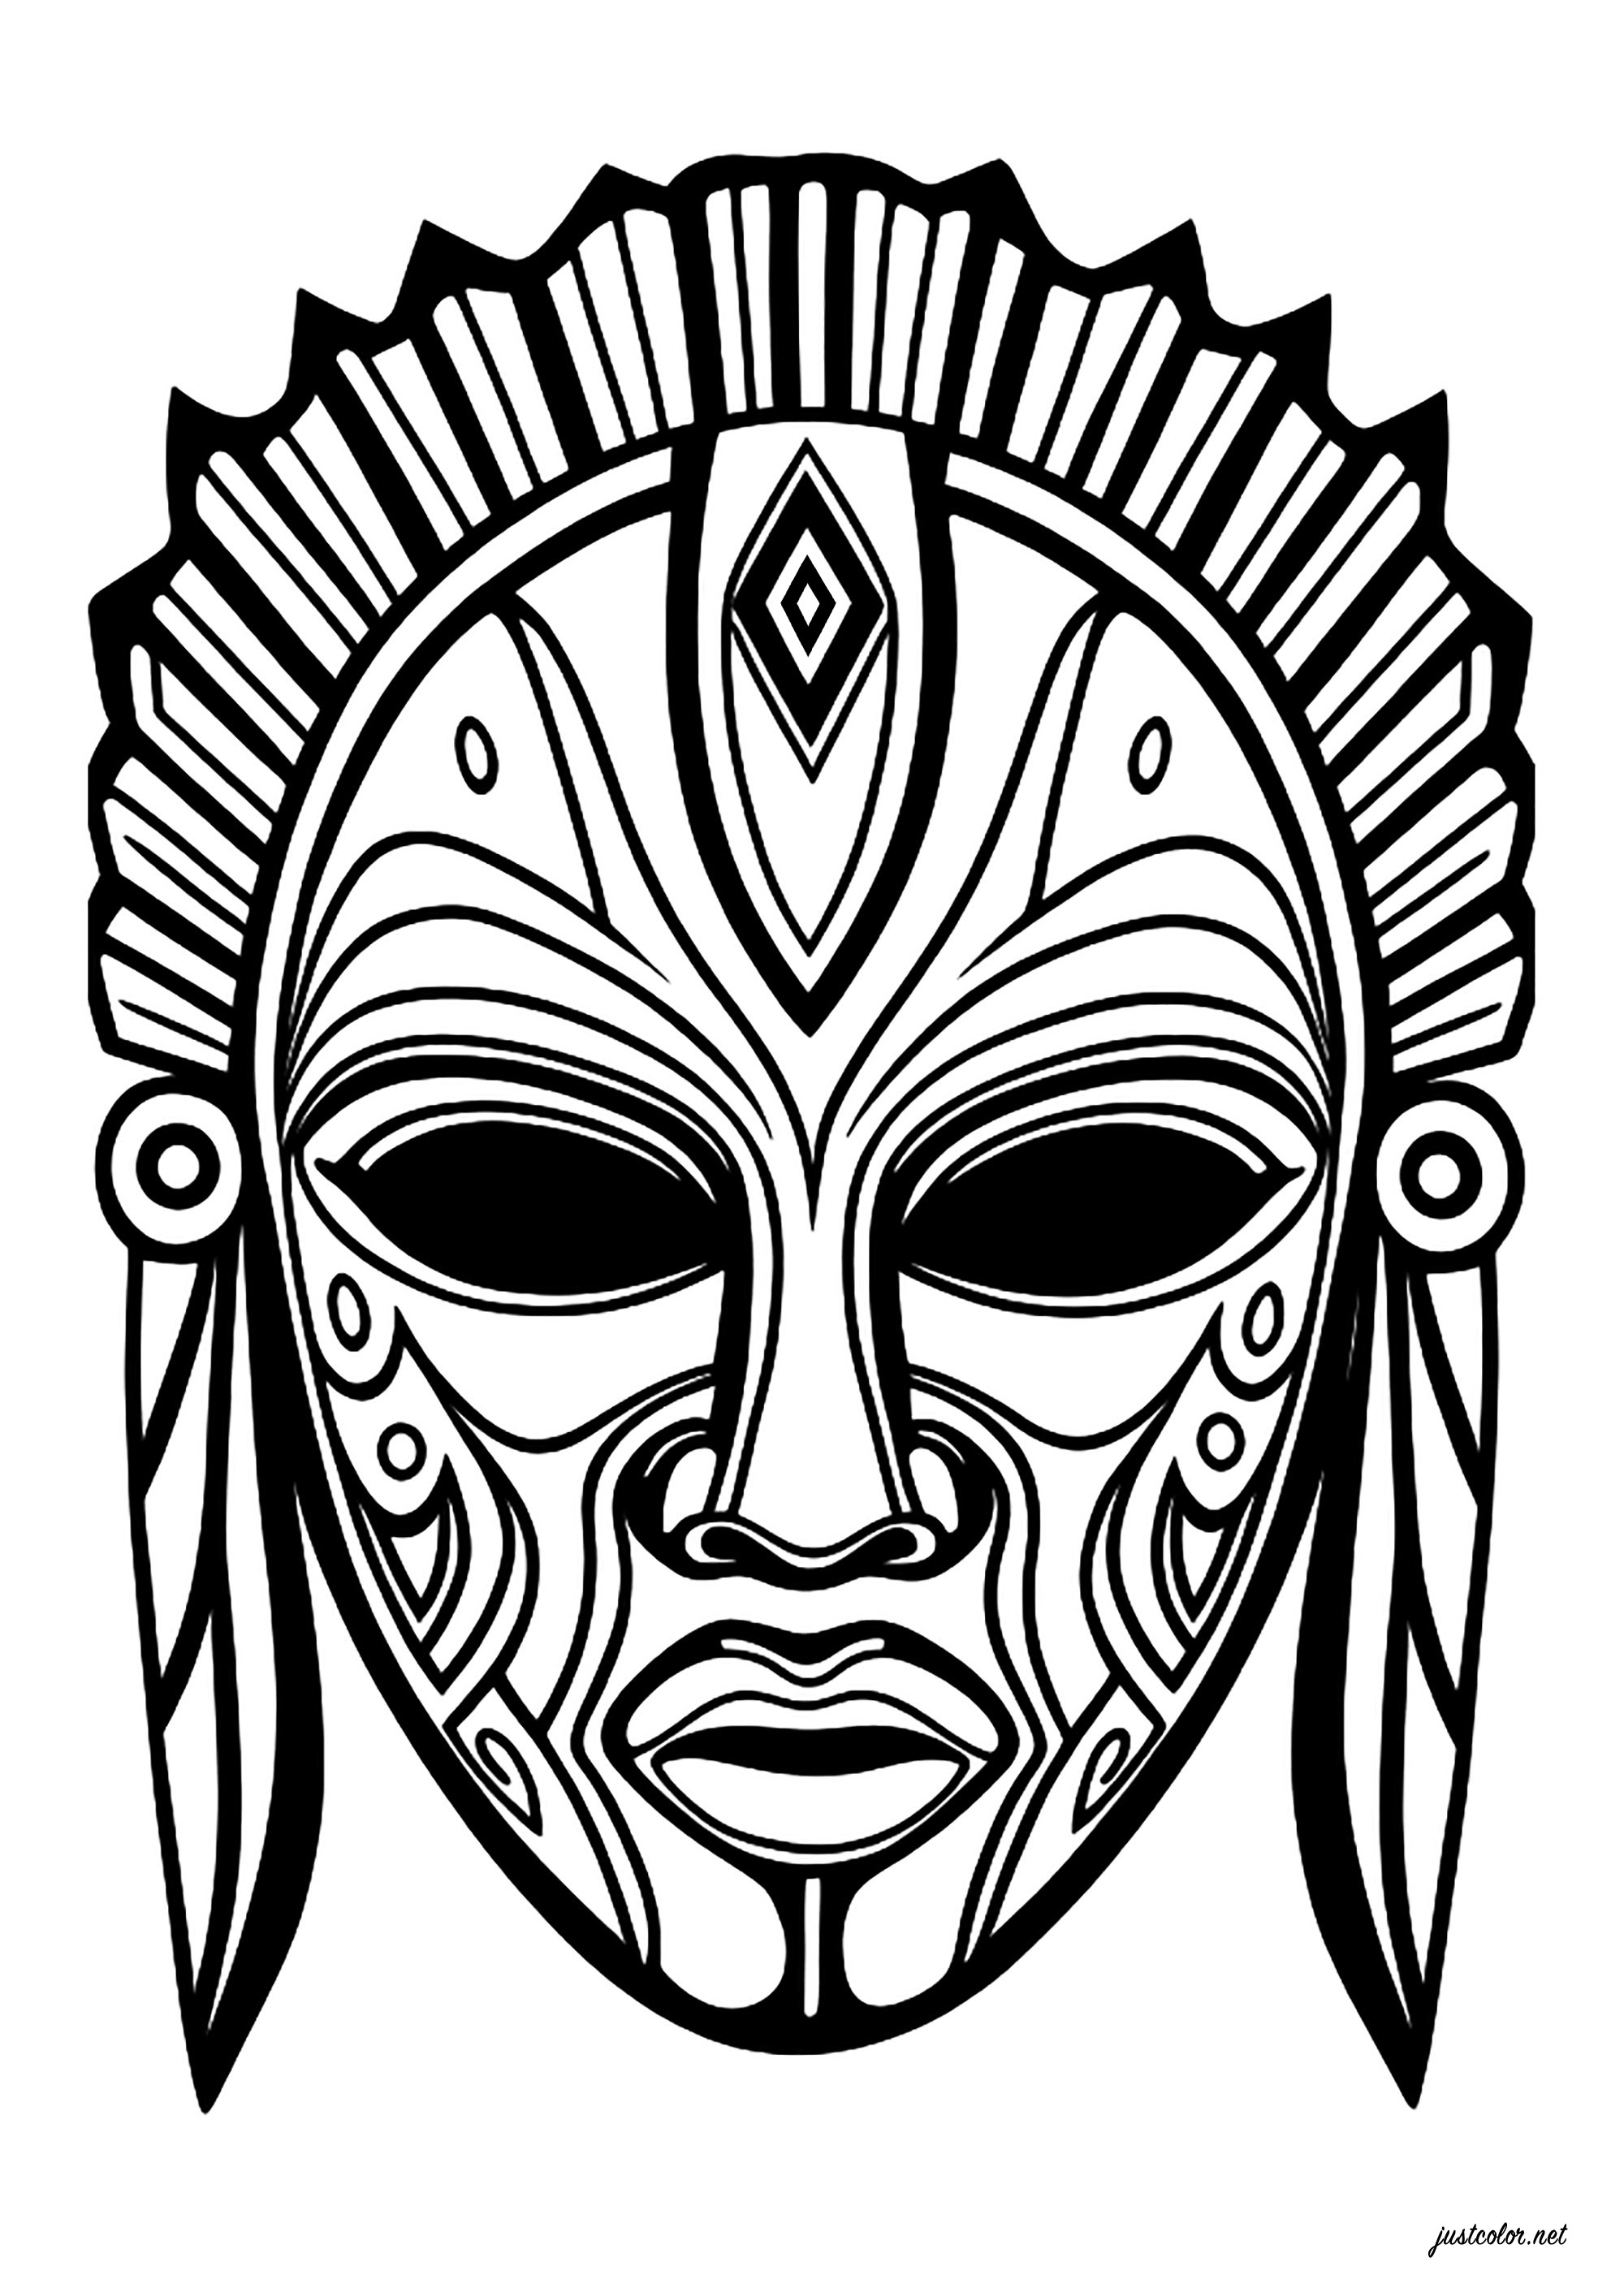 Imaginäre Maske, inspiriert von afrikanischen Masken. Viele Innenmuster, so dass Sie die Maske mit vielen Farben färben können